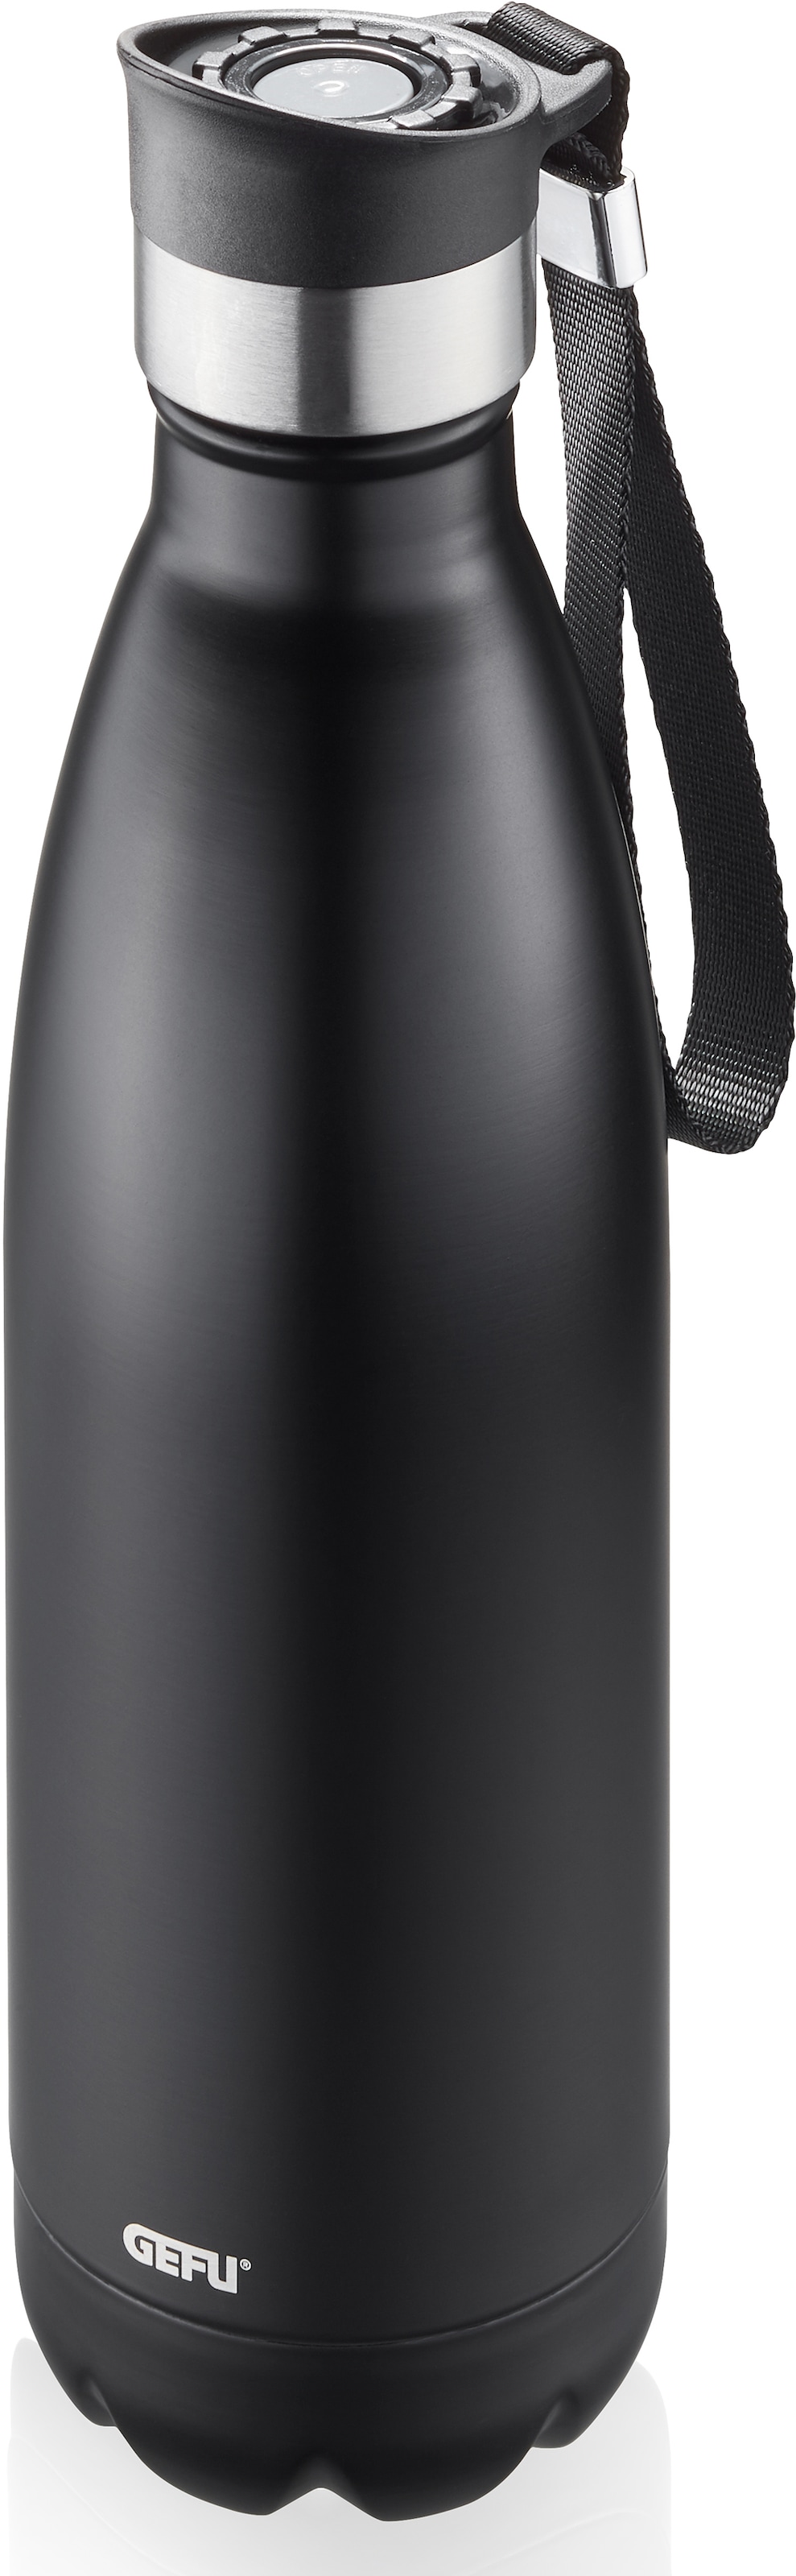 GEFU Thermoflasche »OLIMPIO«, (mit Haltegurt), ideal für kohlensäurehaltige Getränke